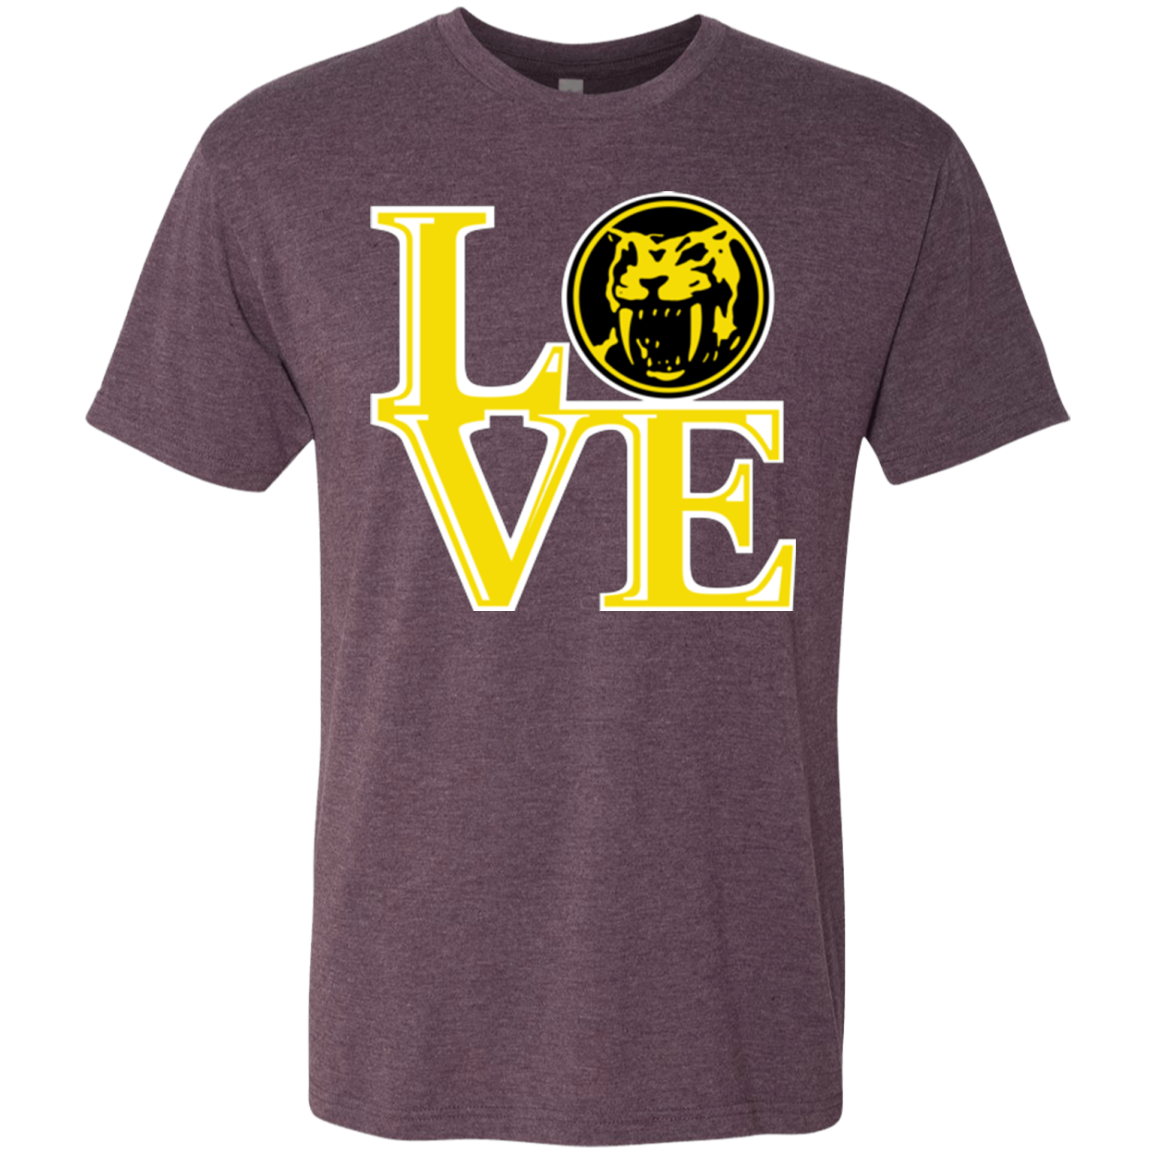 Yellow Ranger LOVE Men's Triblend T-Shirt